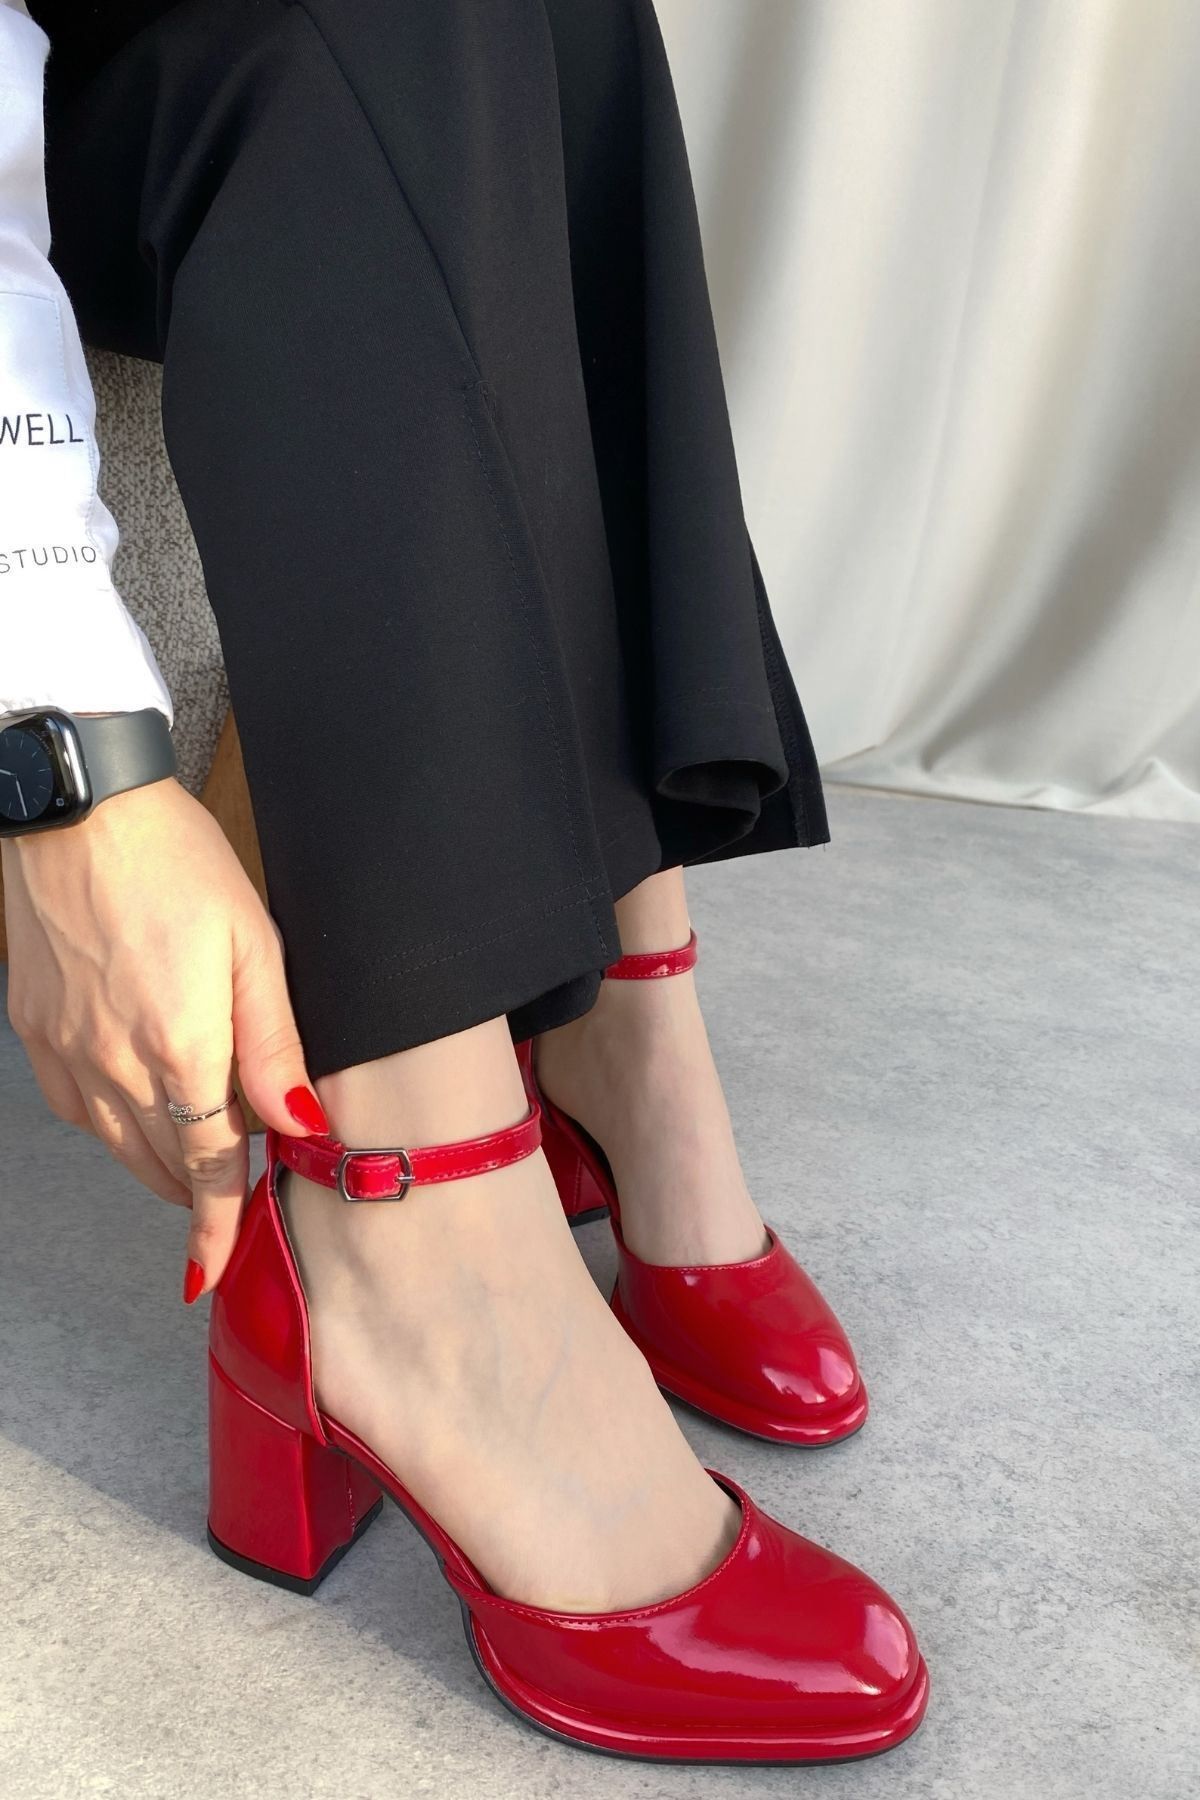 GOFFSHOES Kadın Penida Platform Topuklu Ayakkabı - Kırmızı-Rugan